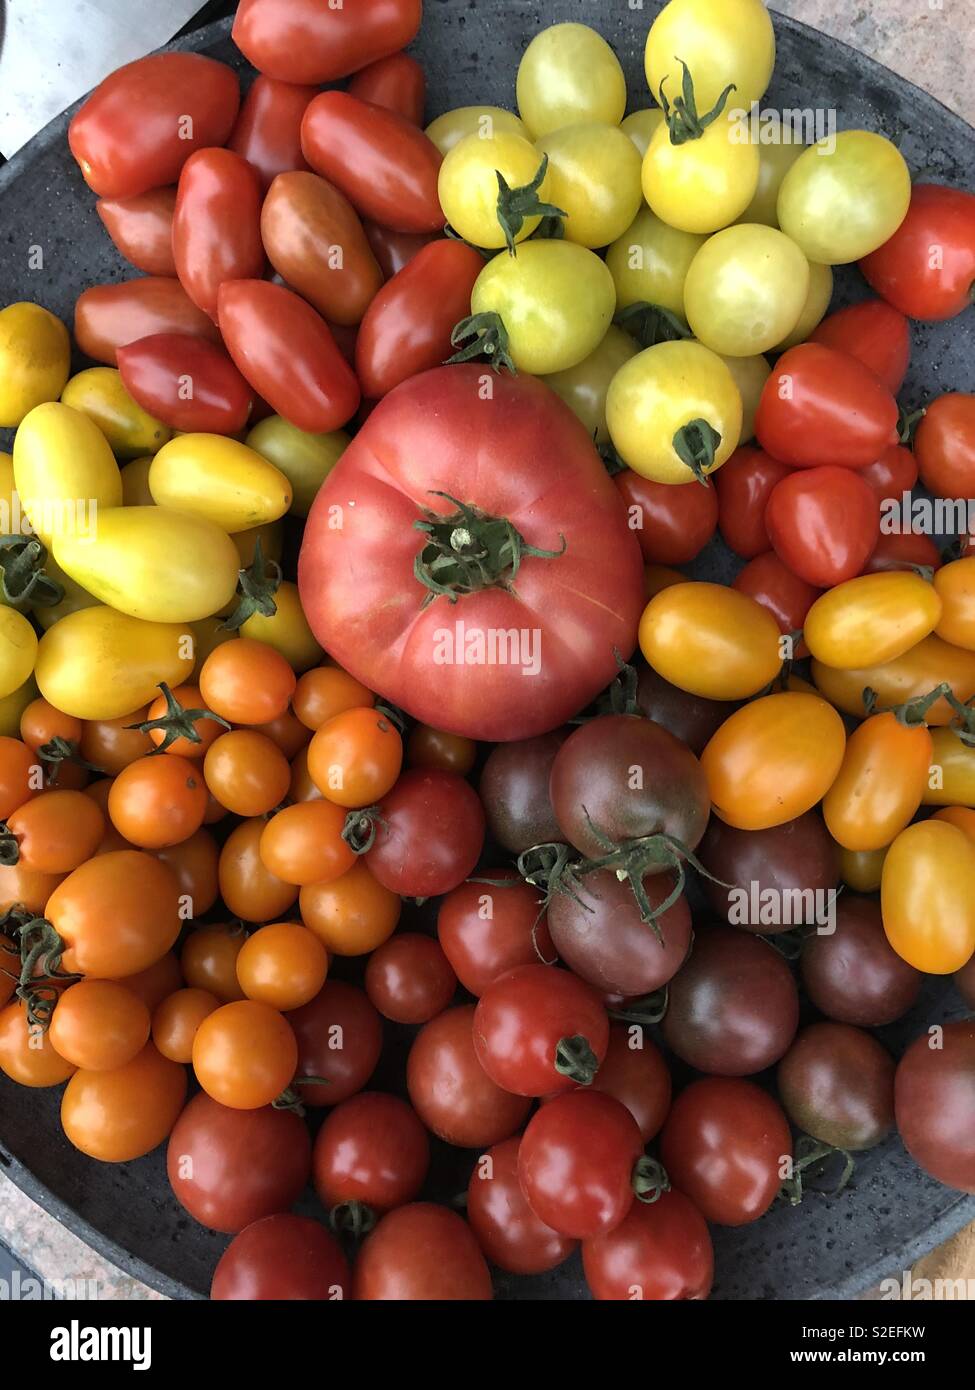 Große Schüssel mit frischen Tomaten alle verschiedene Farben  Stockfotografie - Alamy